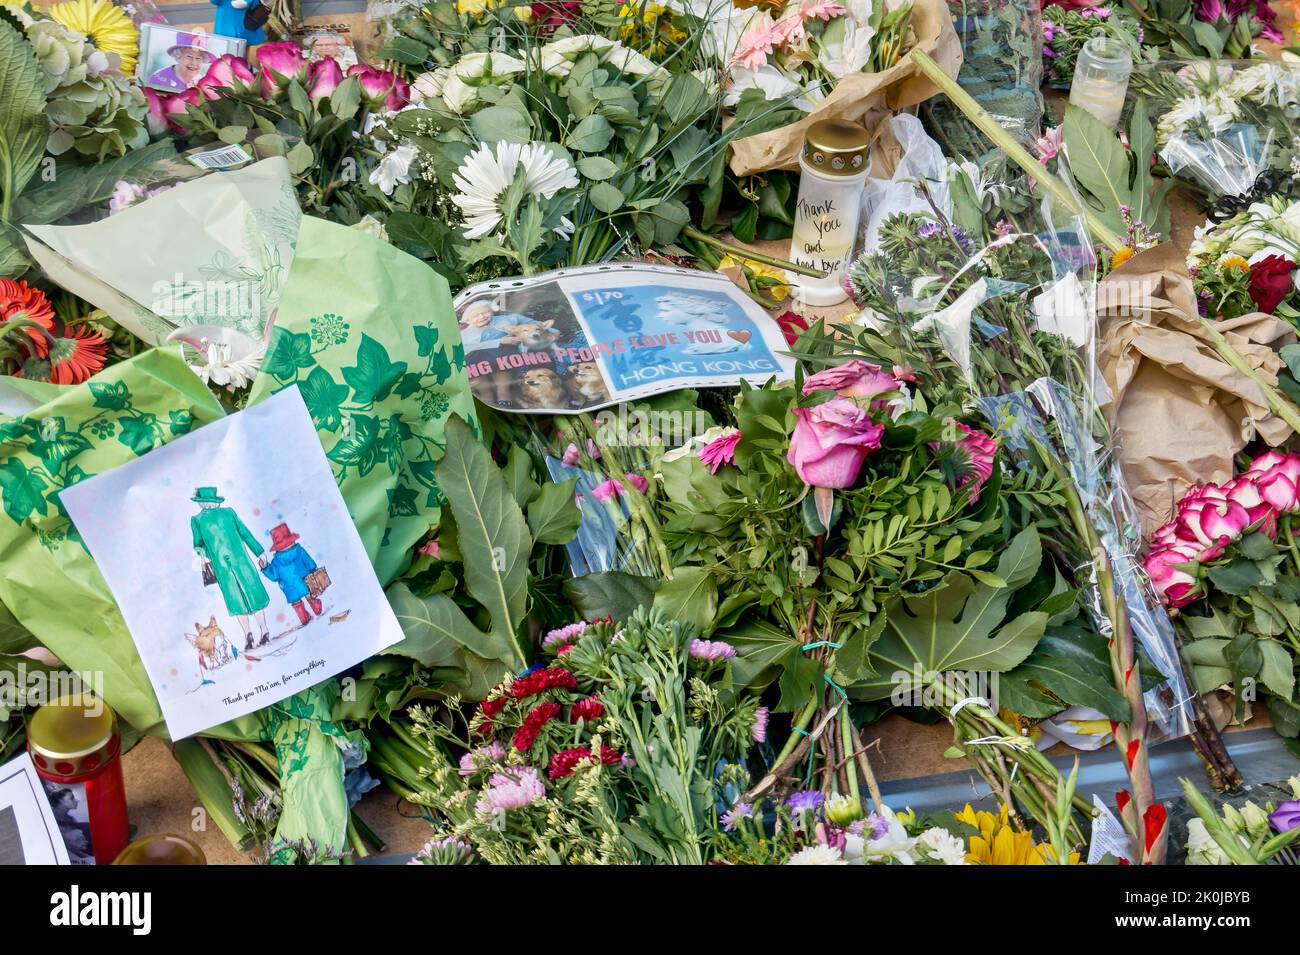 Beileidsbekundungen zum Tod von Königin Elizabeth II der Queen am 08.09.2022 . Blumen und Kerzen werden vor der britischen Botschaft in Berlin abge Stockfoto